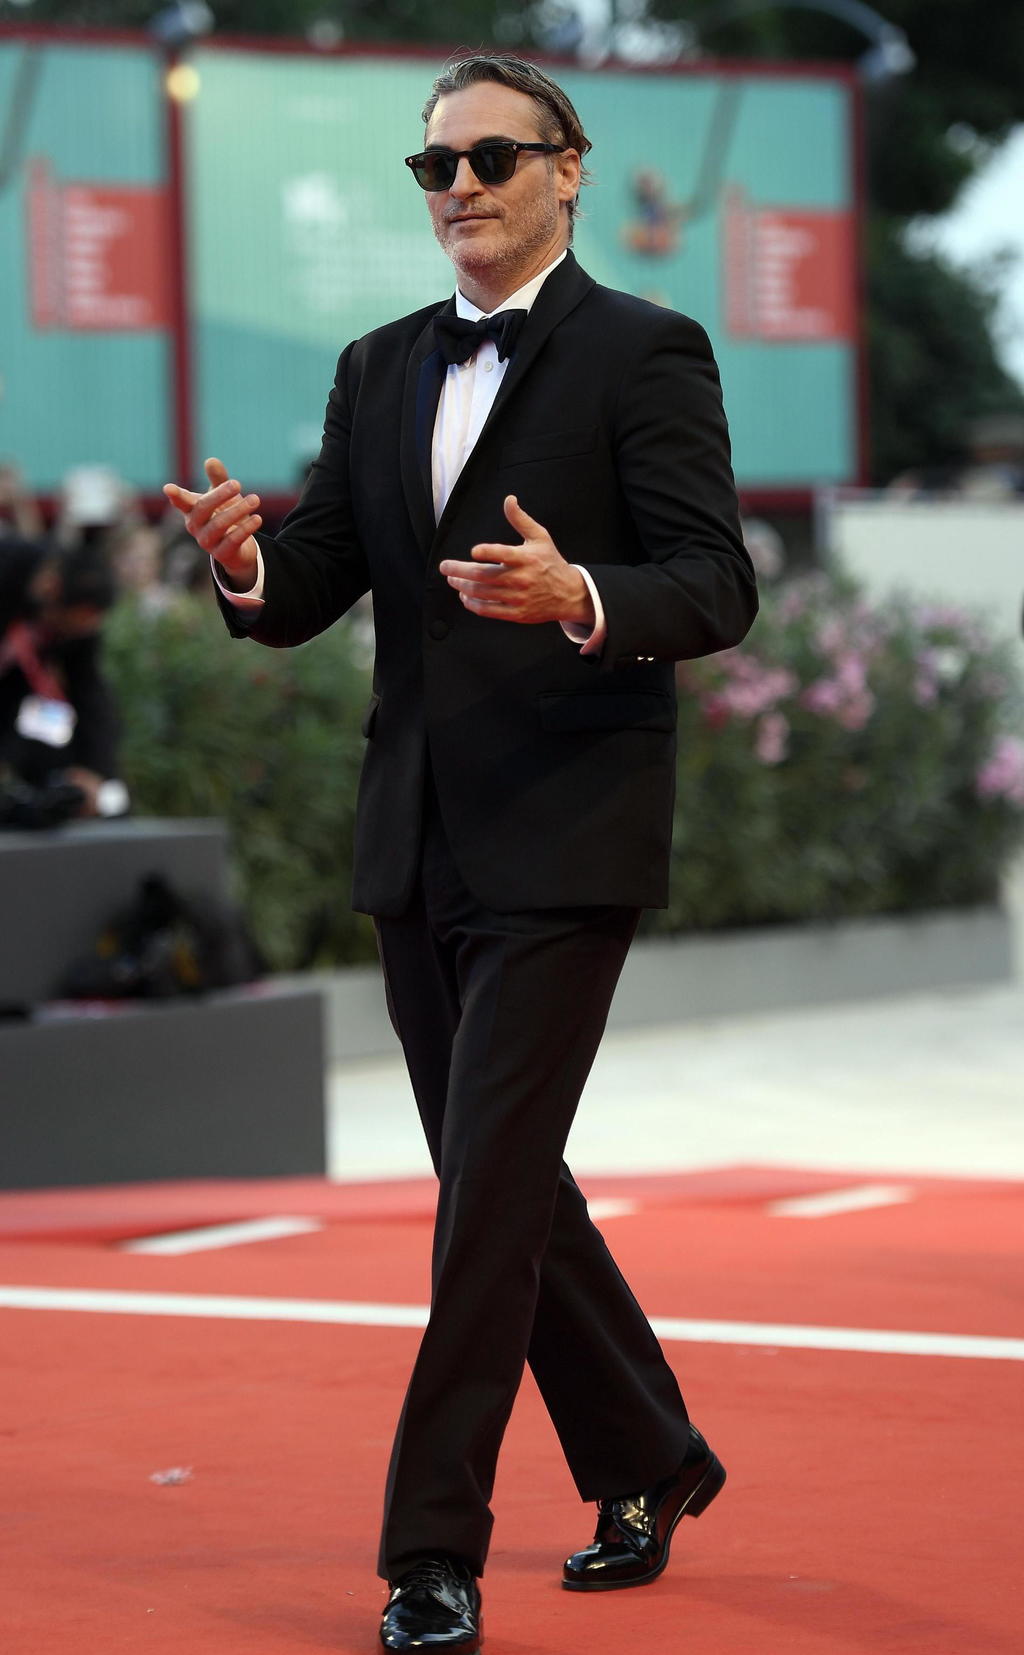 Con el Joker. Joaquin Phoenix despertó un enorme interés en el Festival de Cine de Venecia, donde compite en la Selección Oficial por el León de Oro.